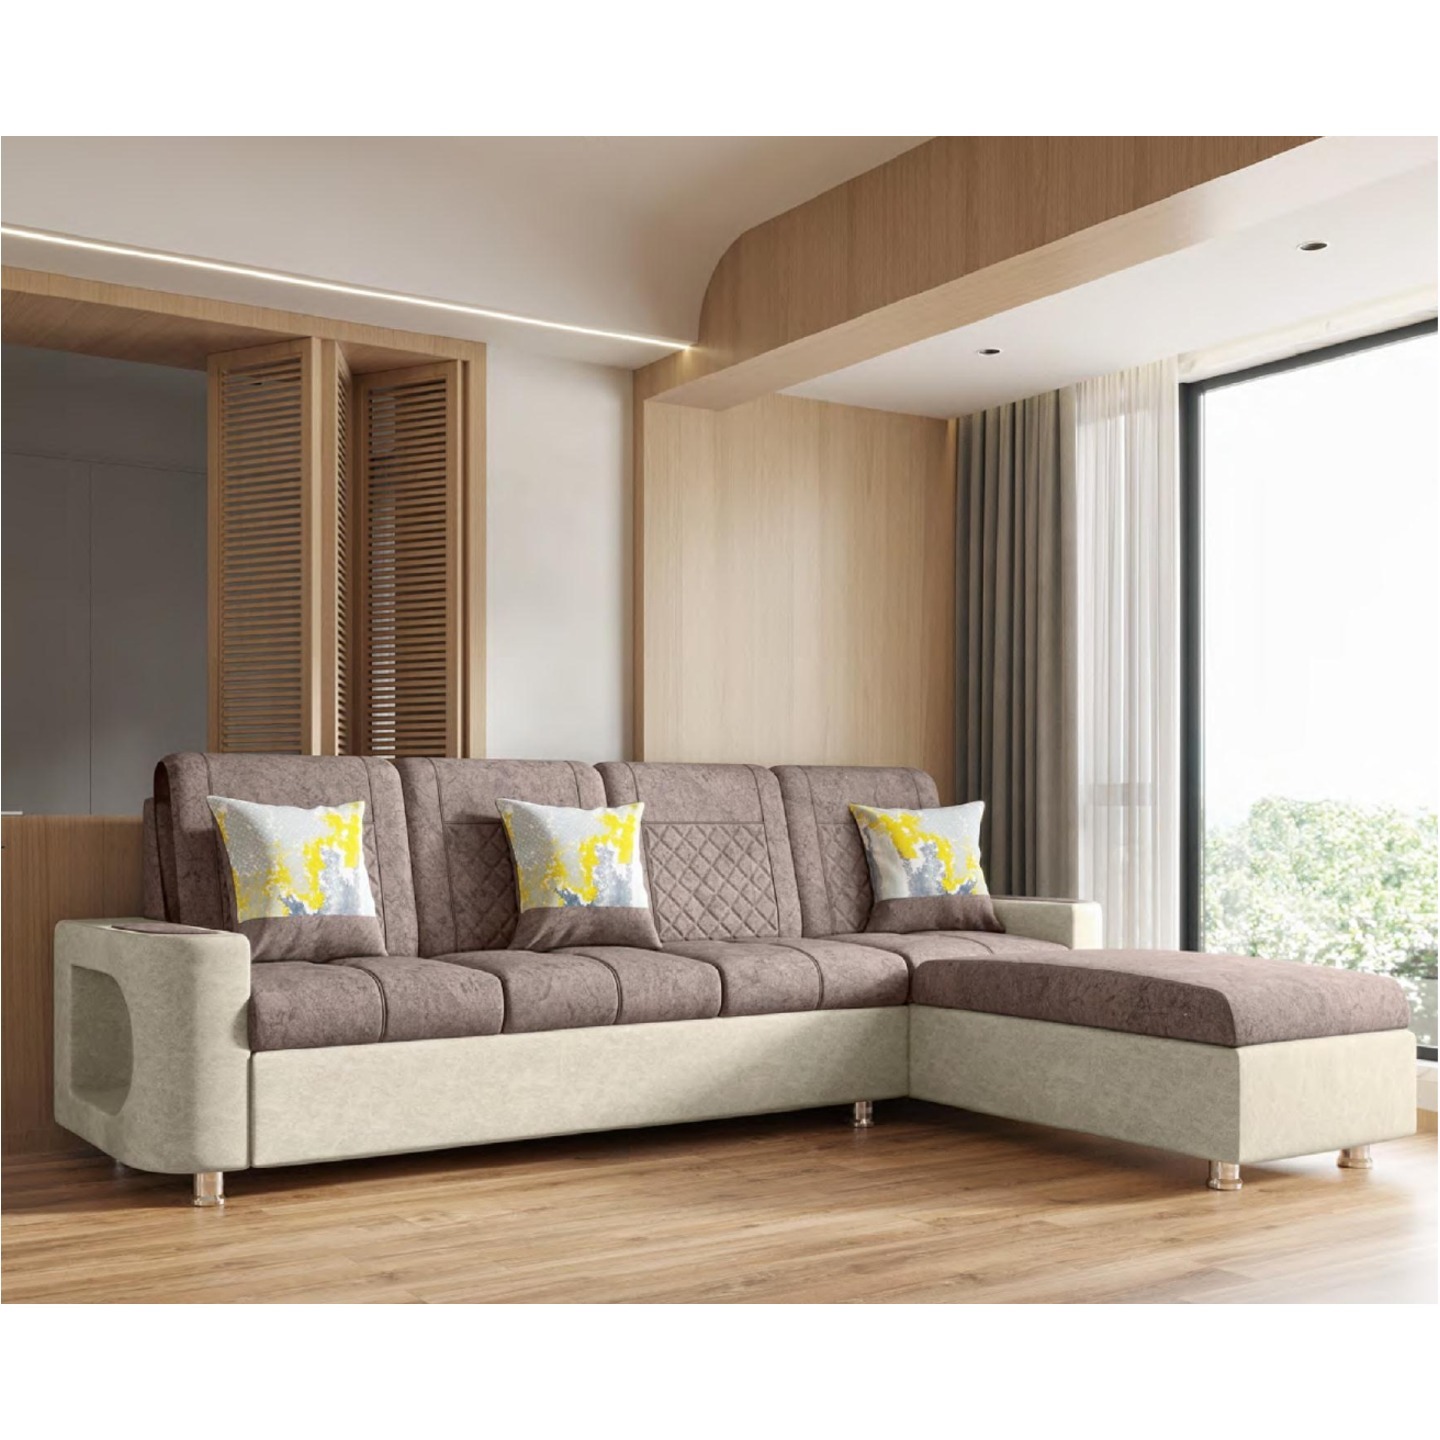 RLF Corner Sofa Set DD-521 In Brown & Cream Colour